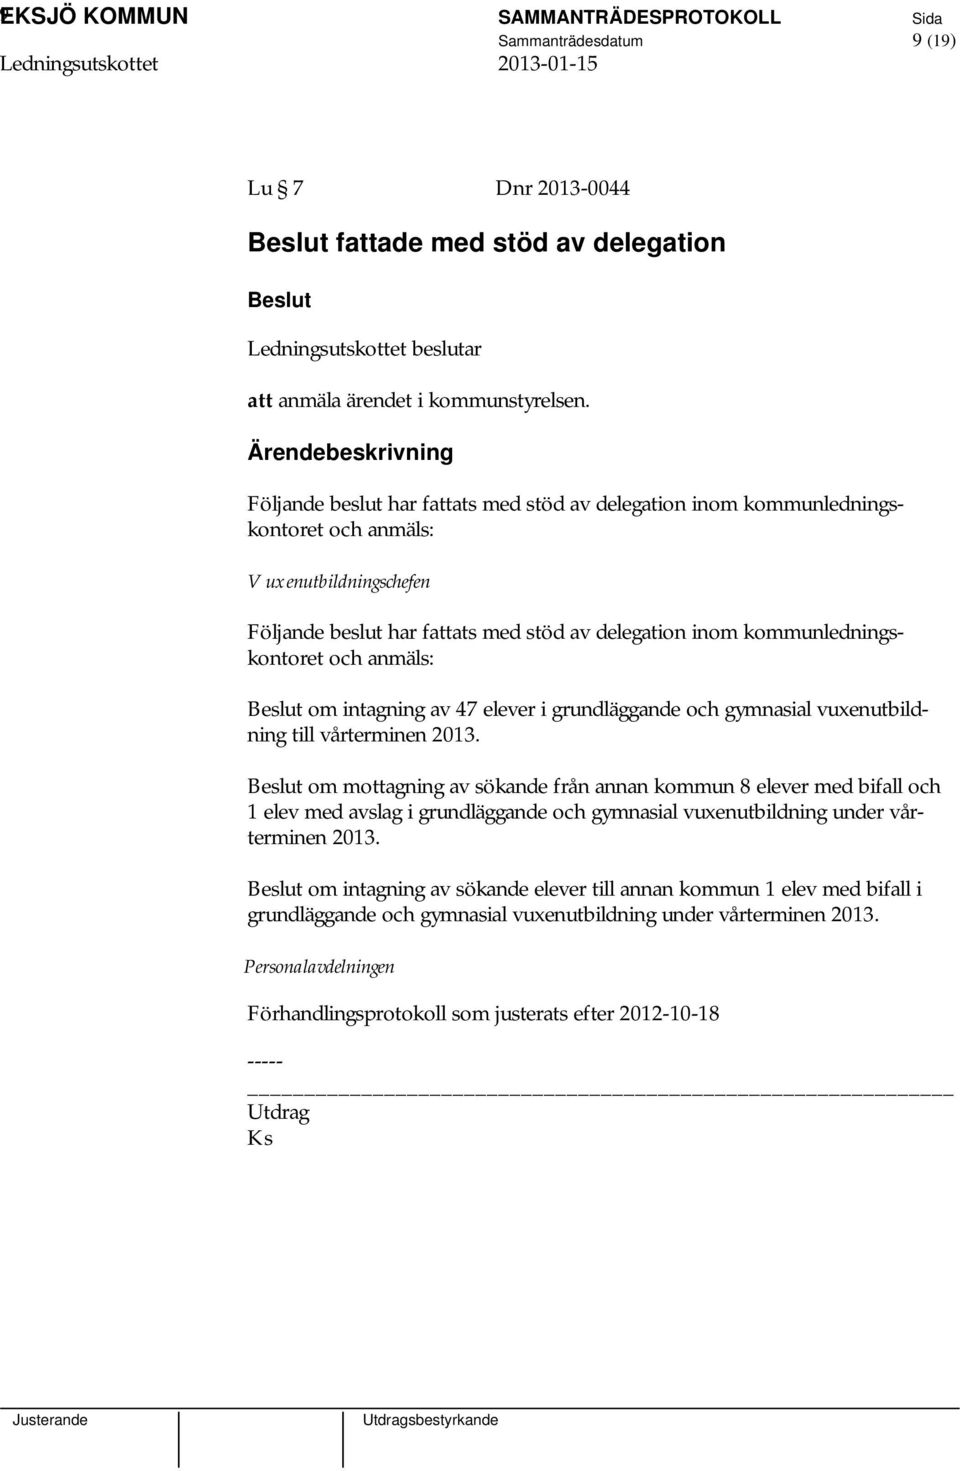 anmäls: om intagning av 47 elever i grundläggande och gymnasial vuxenutbildning till vårterminen 2013.